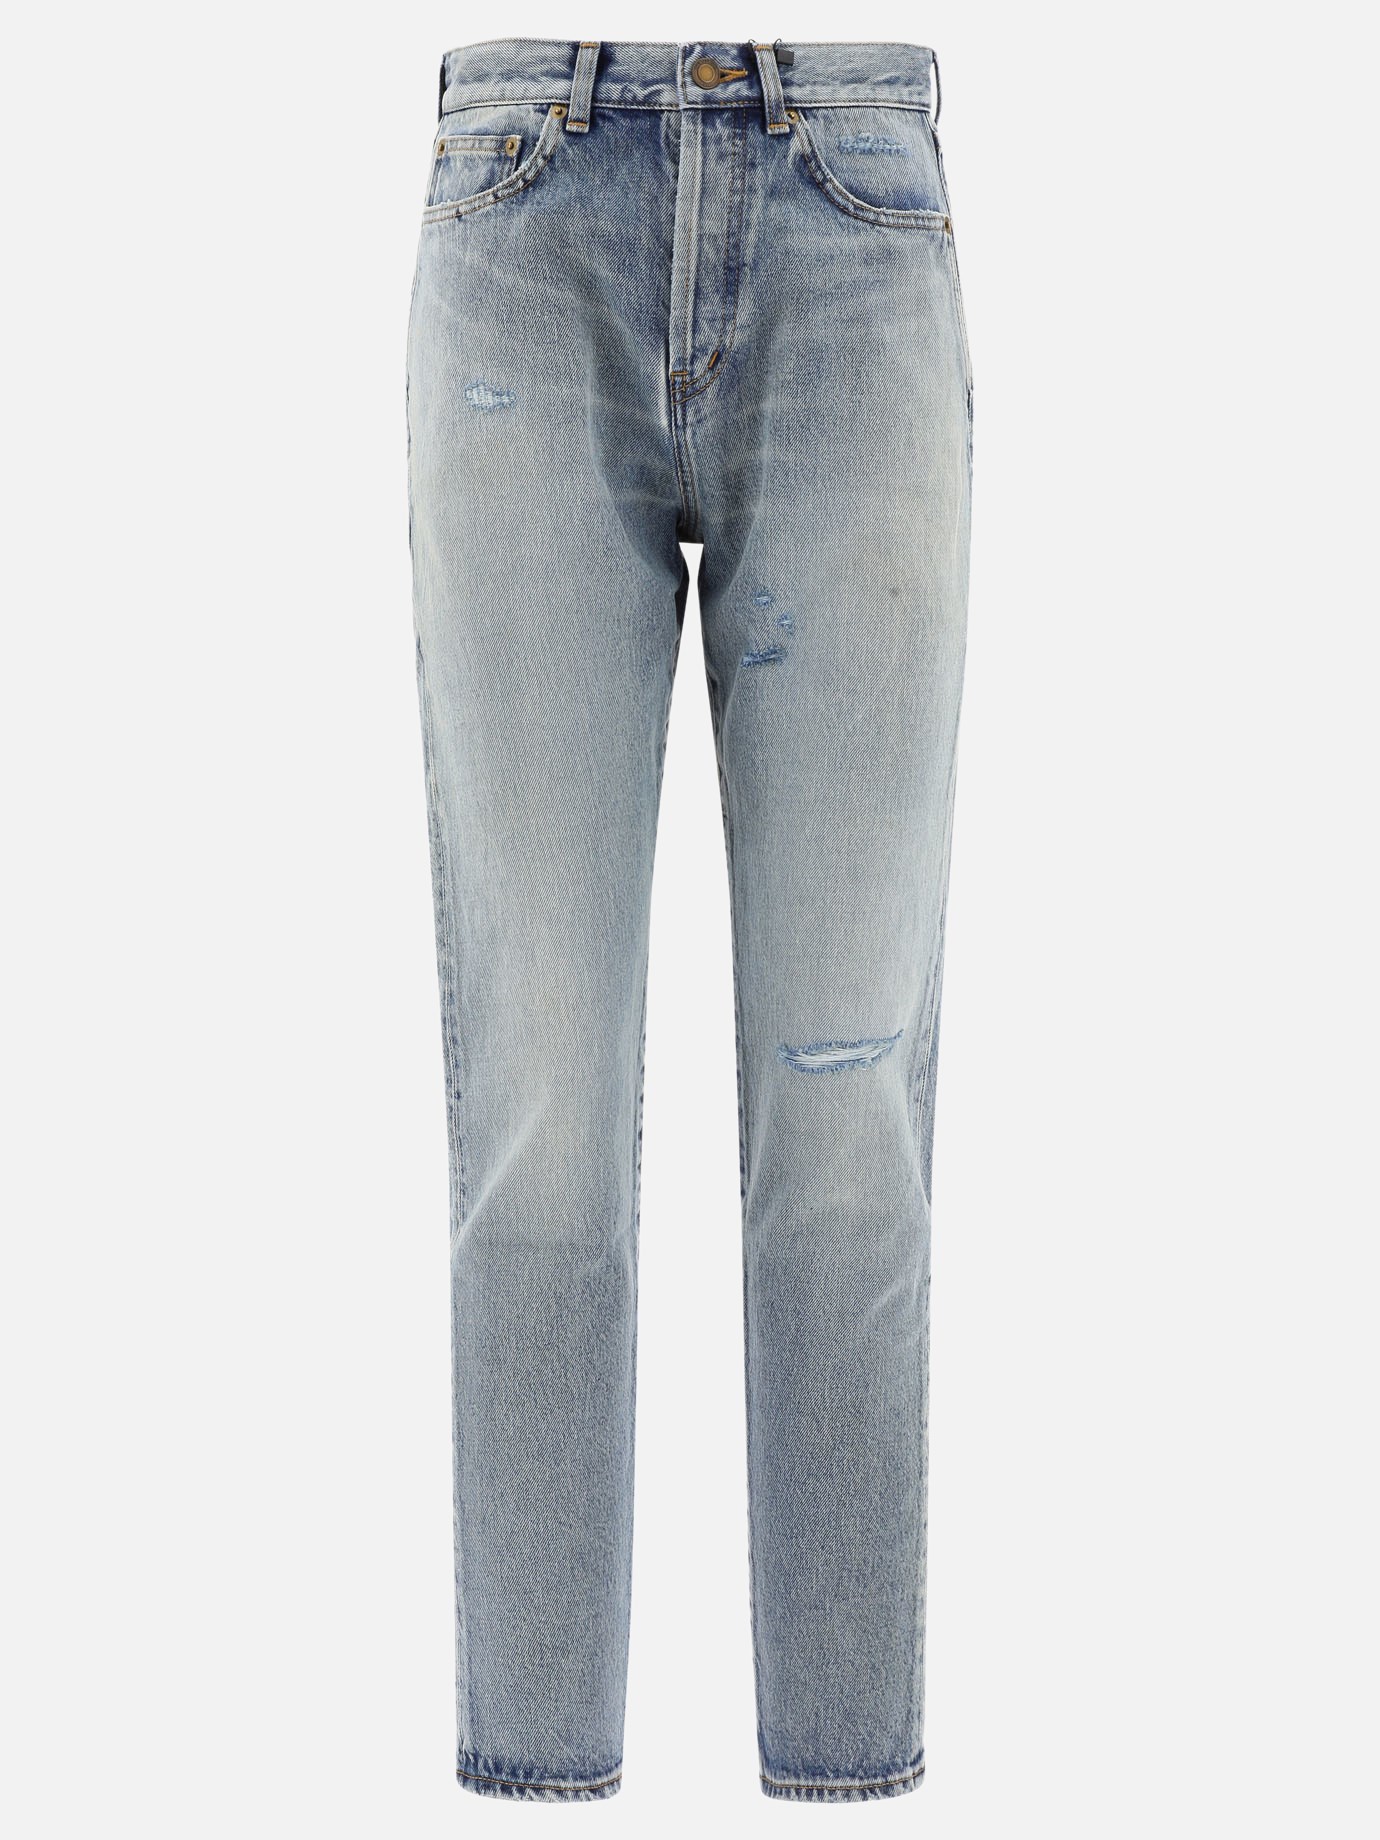  Santa Monica  jeans by Saint Laurent